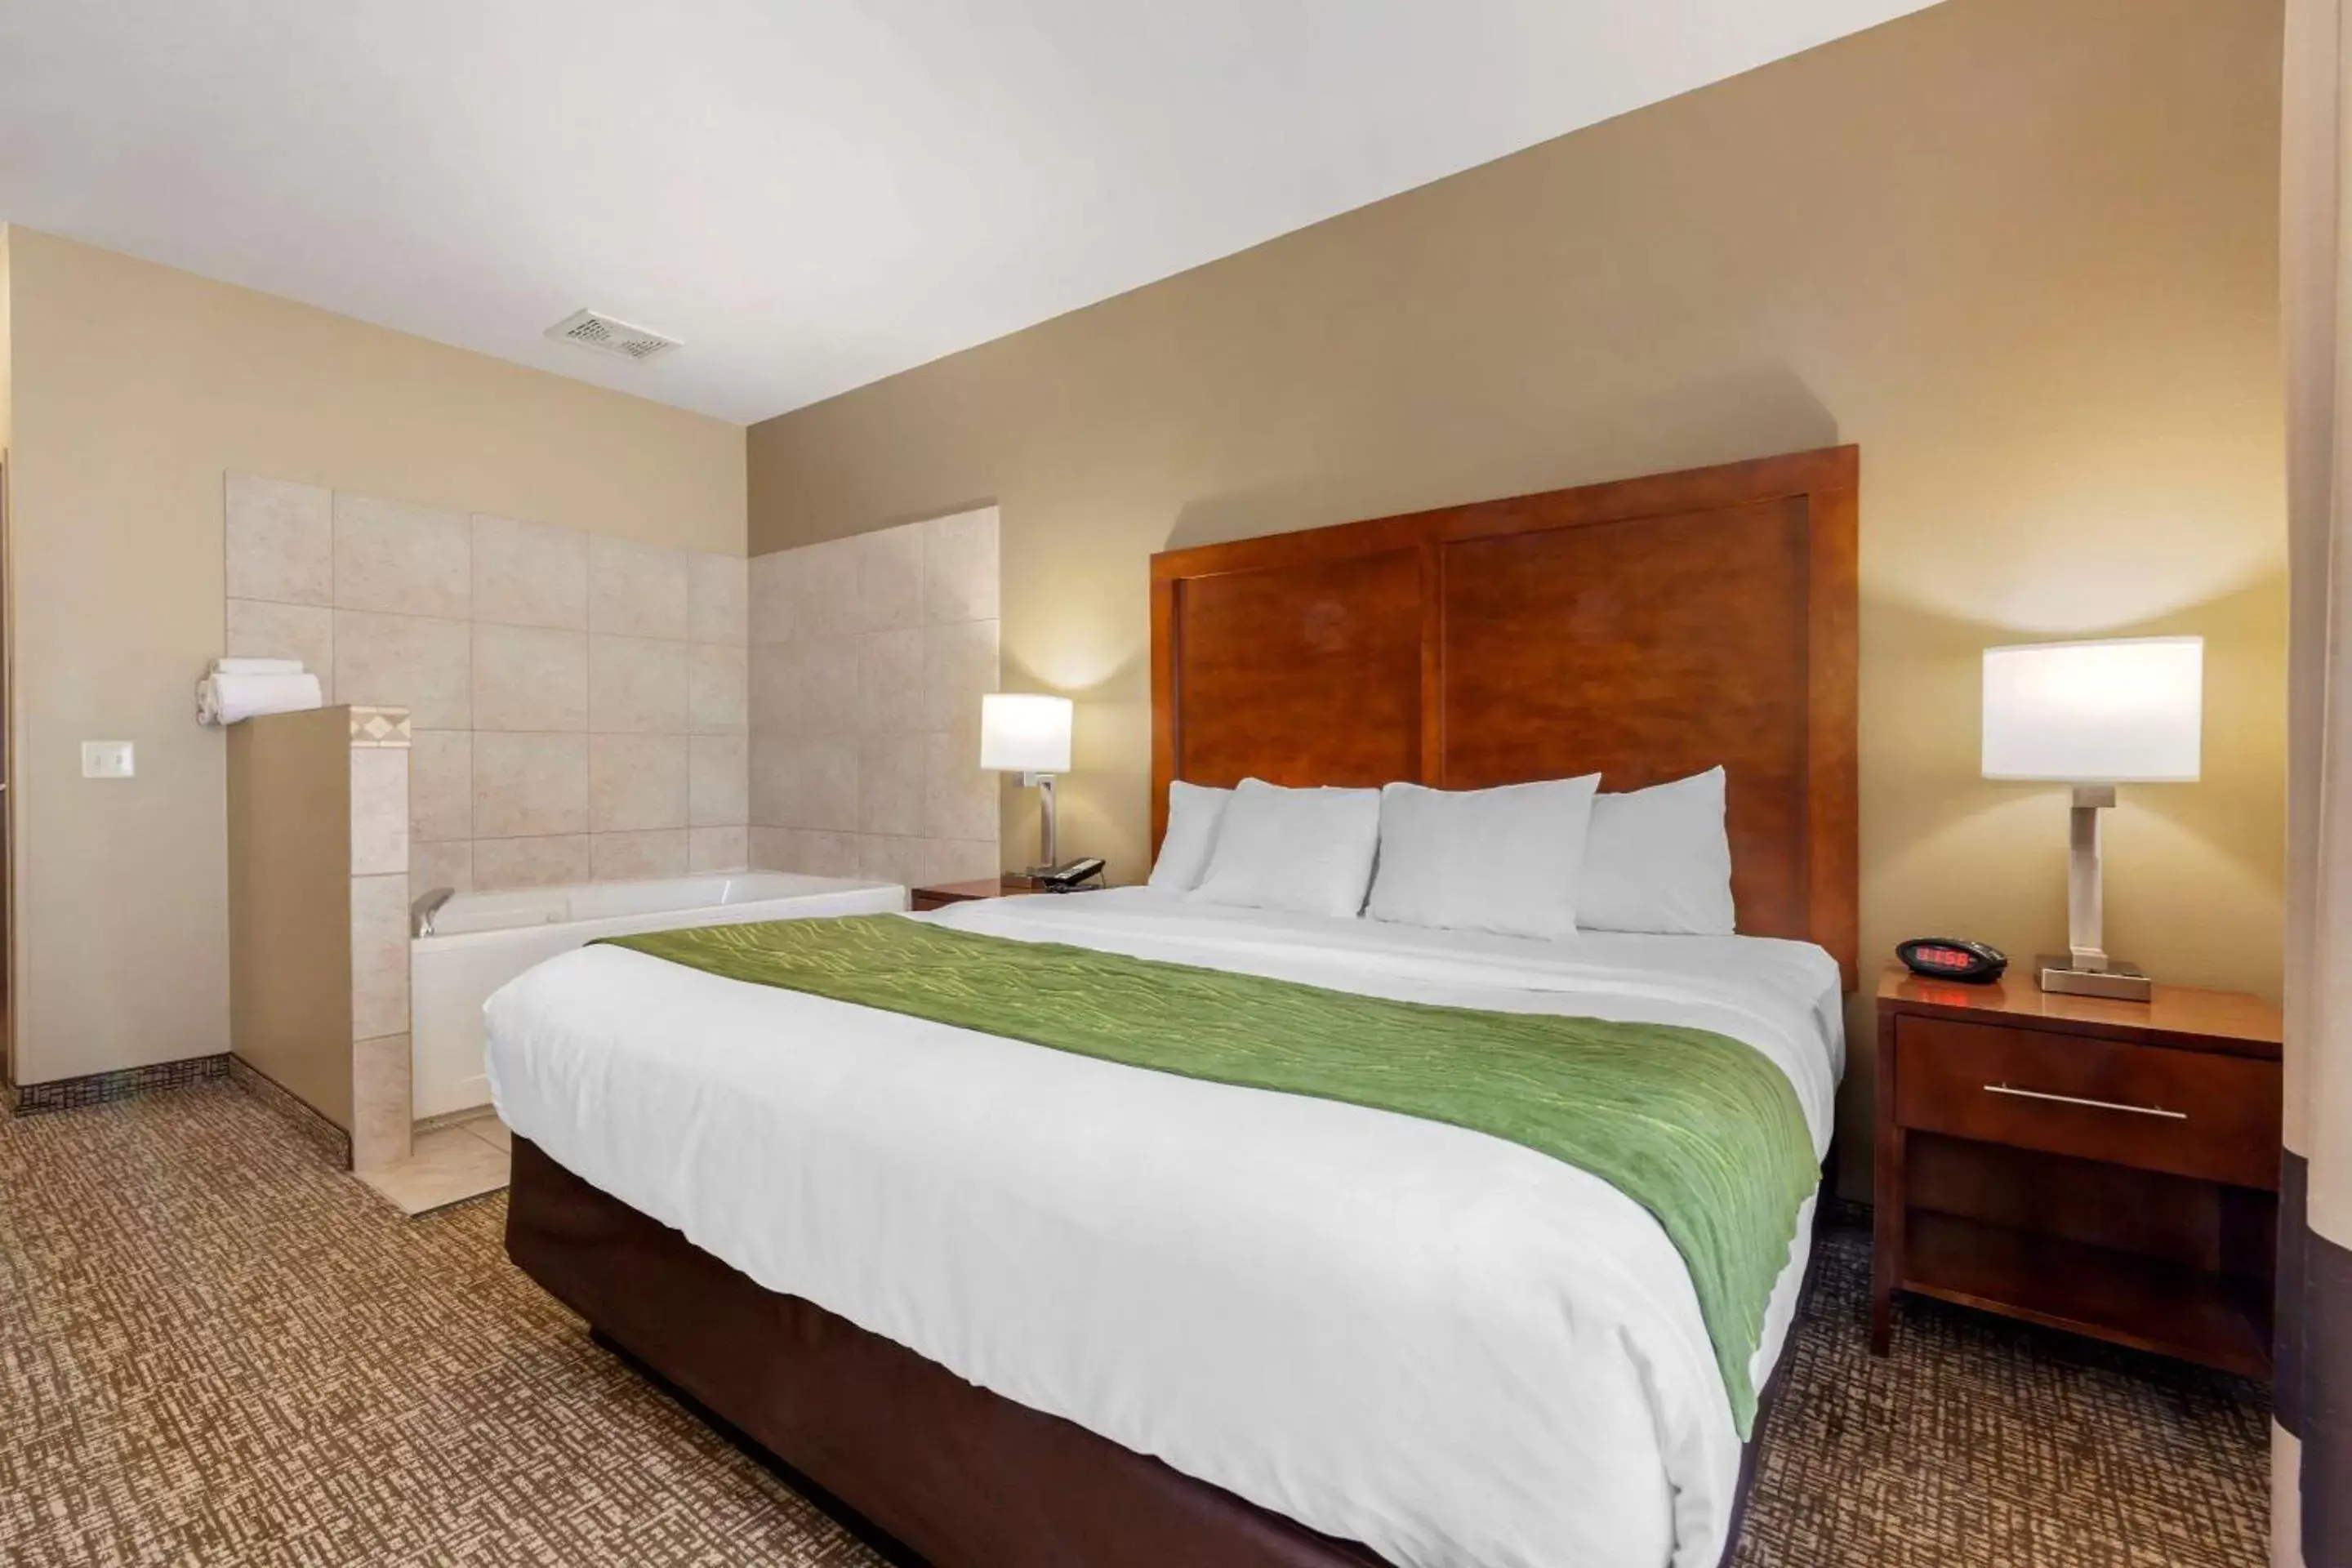 Bedroom, Bed in Comfort Inn Plover-Stevens Point